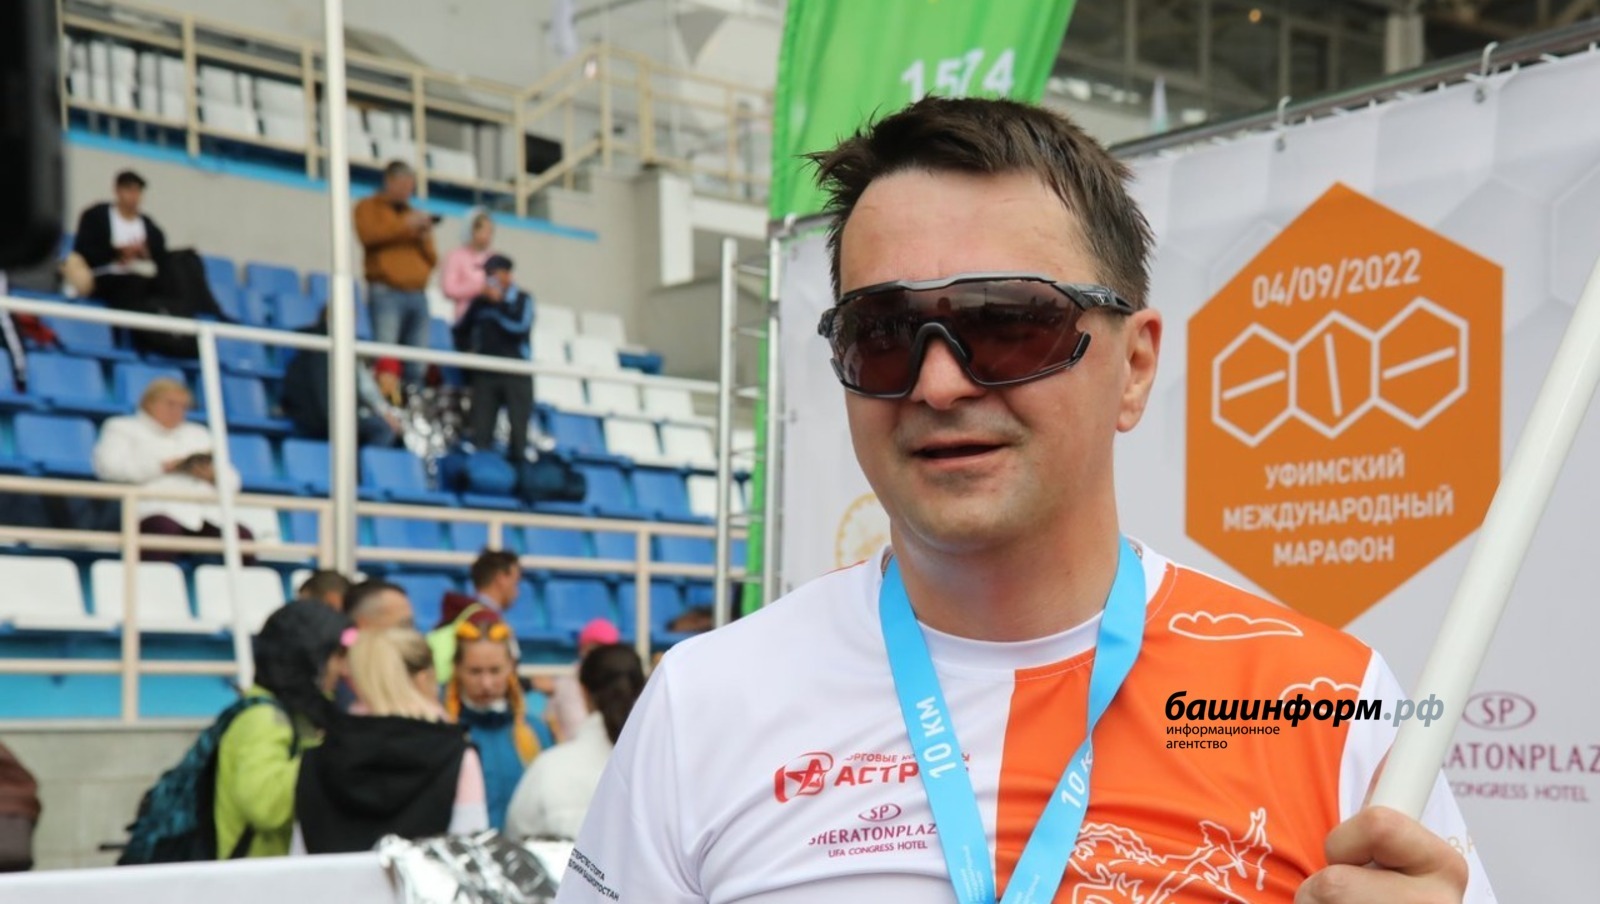 Руководитель администрации главы РБ пробежал уфимский марафон